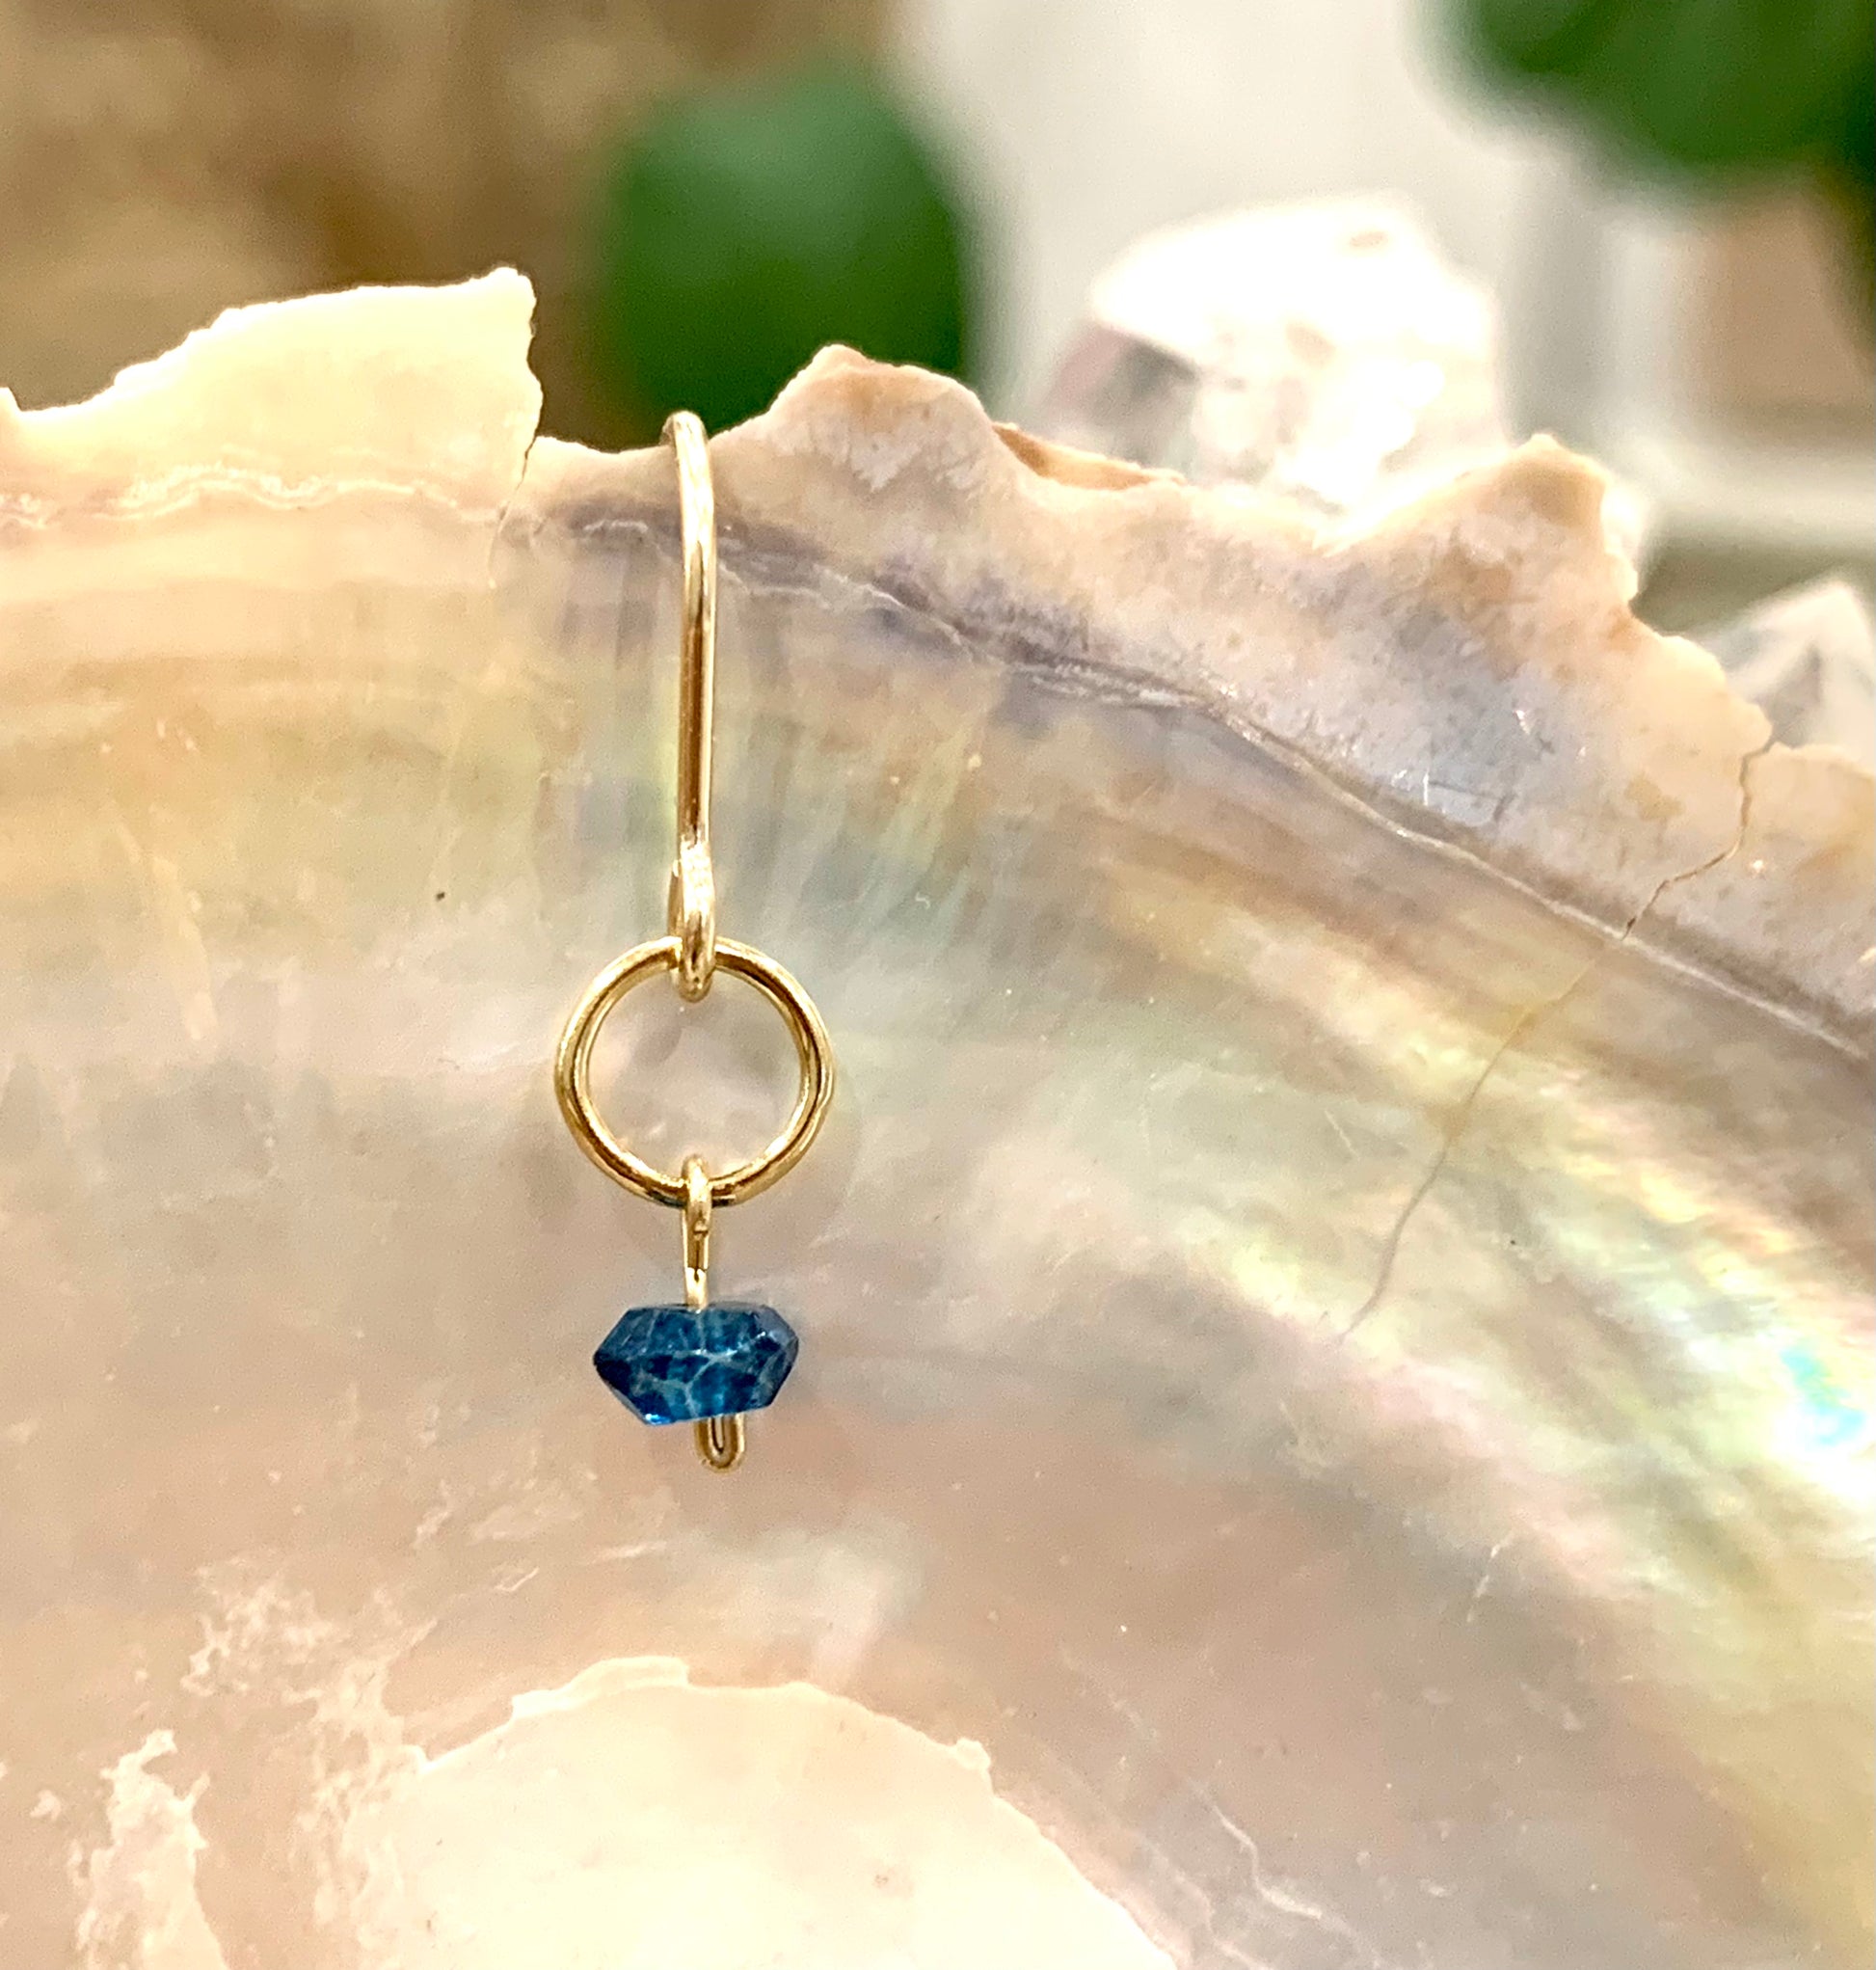 Mini gemstone hook earrings, london blue topaz earrings, london blue topaz earrings in gold